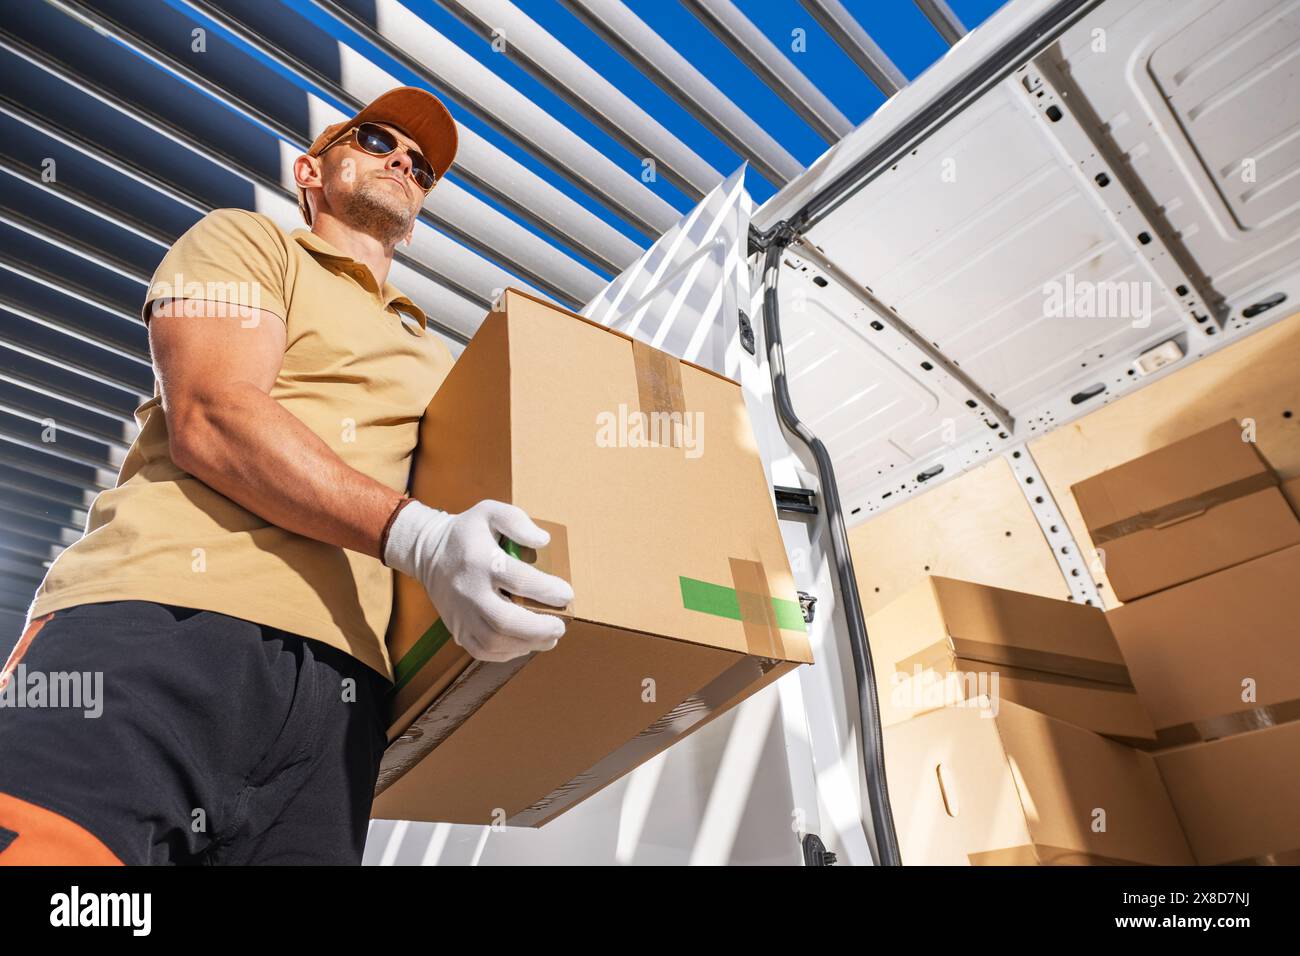 Ein Kurier in einem gelben Hemd und weißen Handschuhen hält eine Kiste mit einem ernsthaften Gesichtsausdruck. Stockfoto